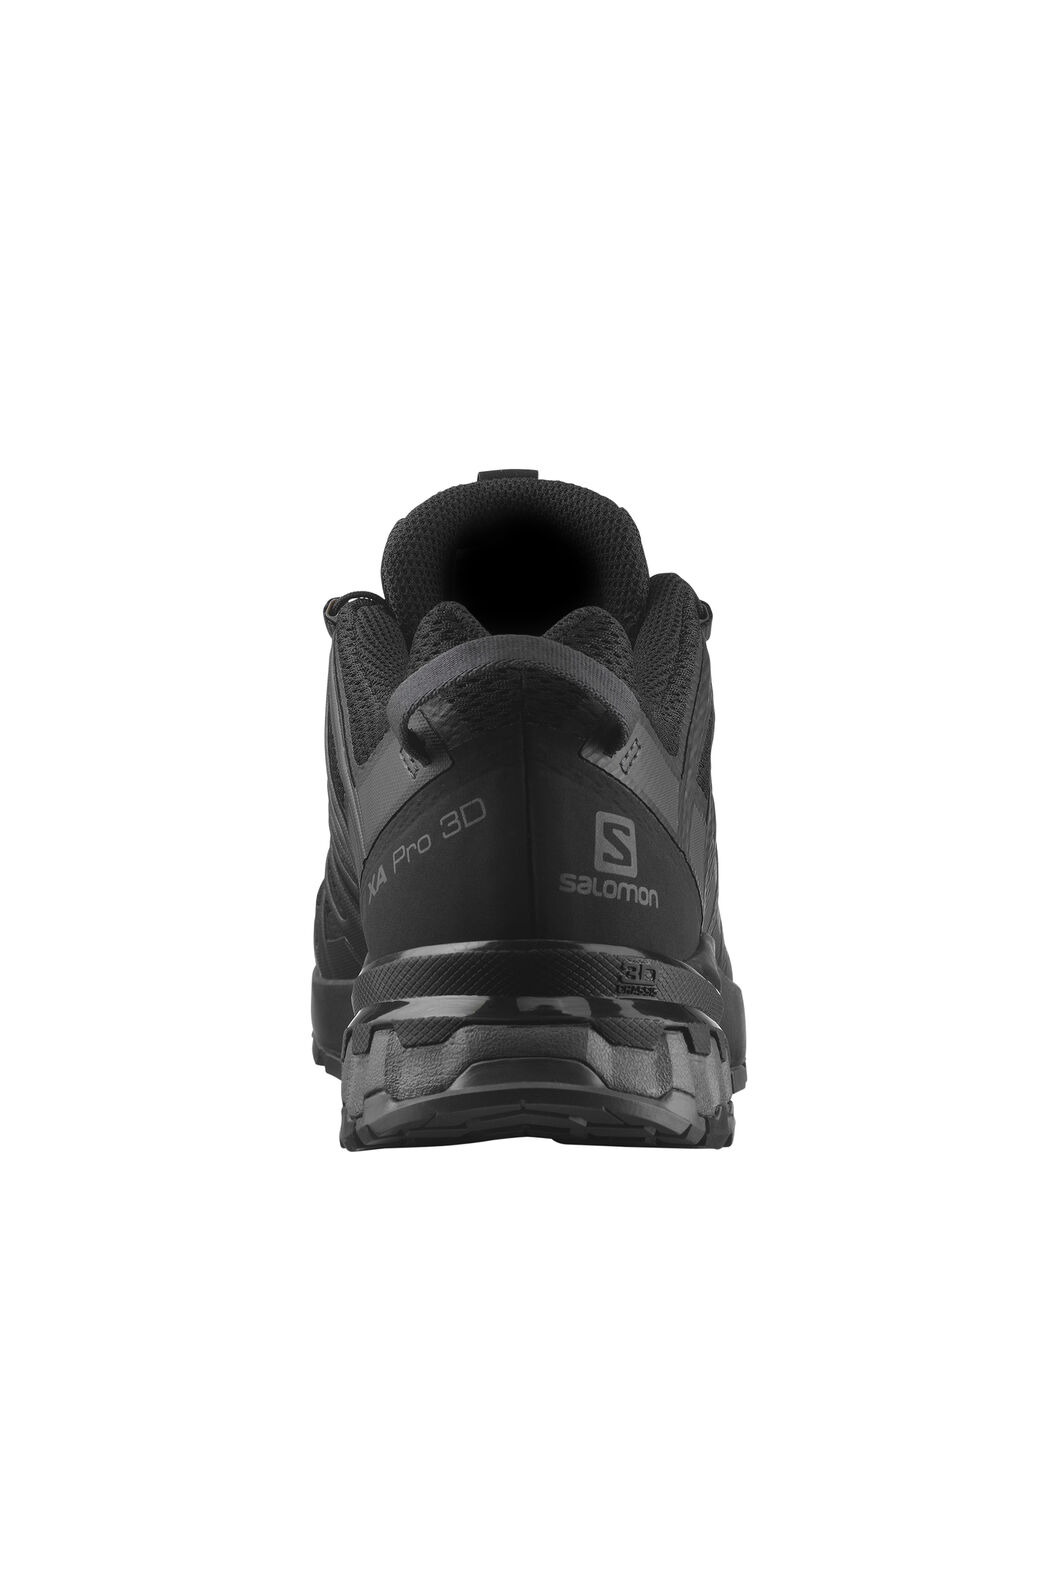  Salomon Men's XA PRO 3D GORE-TEX Trail Running Shoes for Men,  Black / Black / Magnet, 7